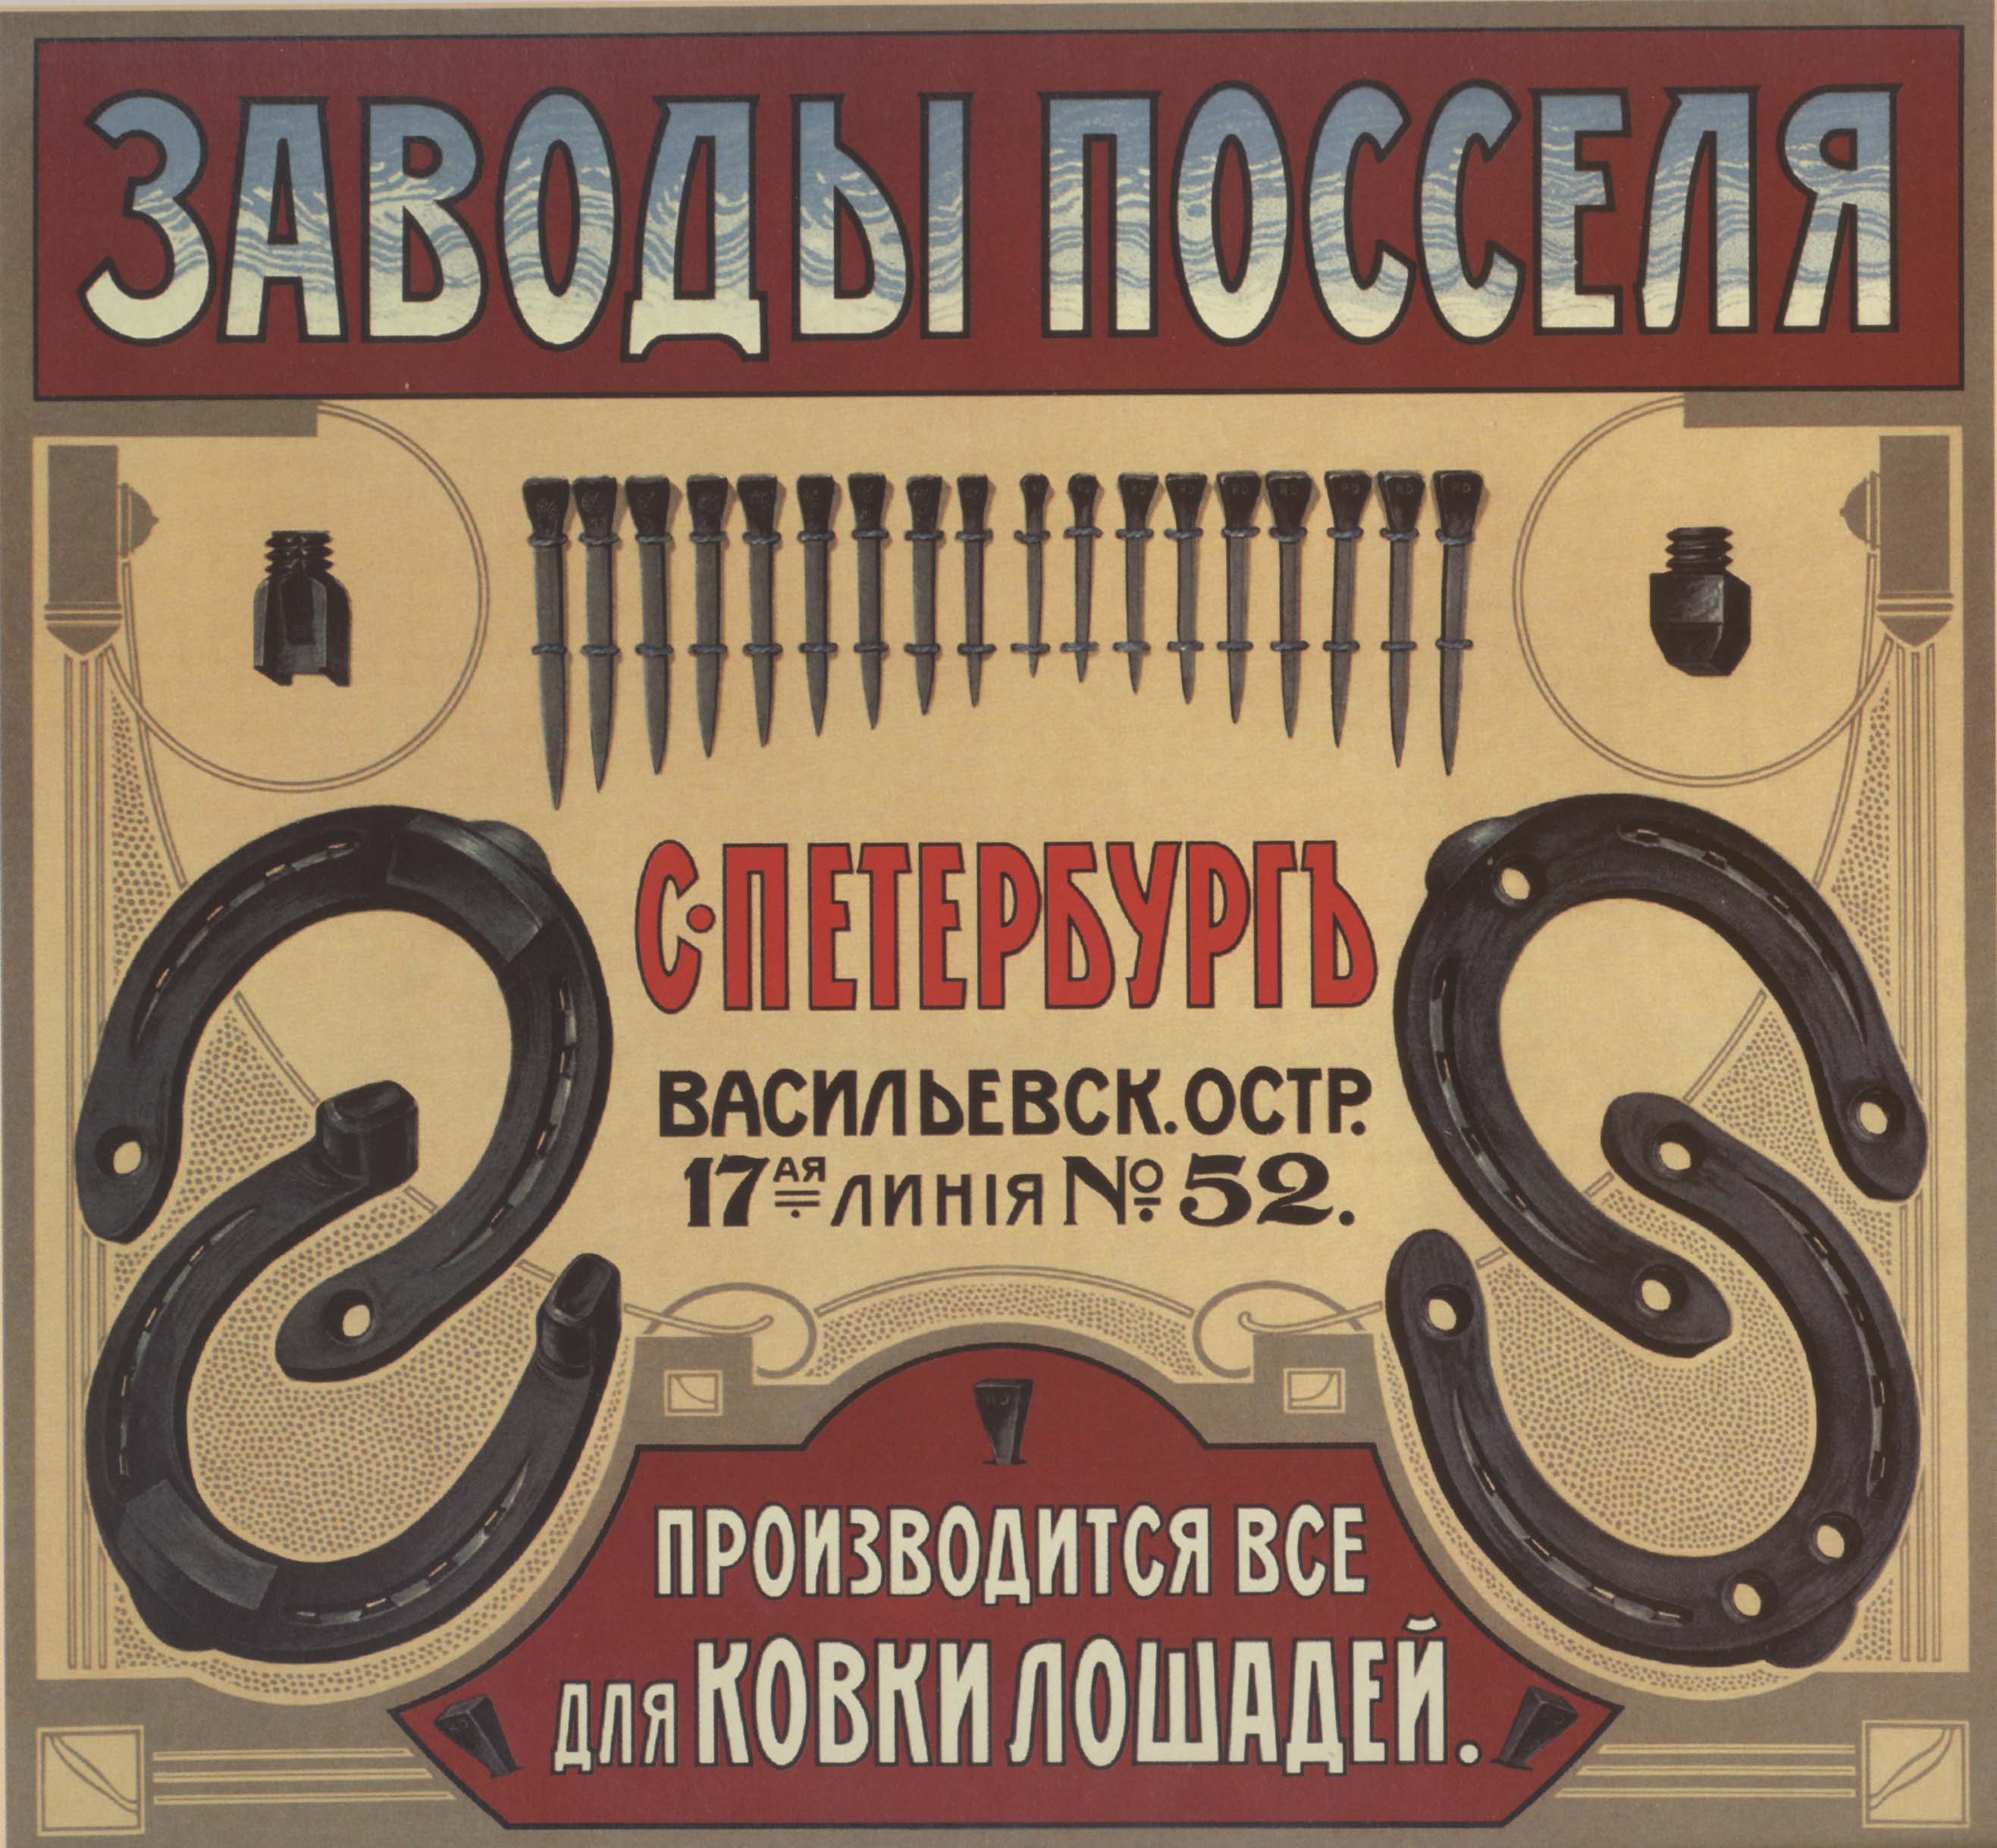 Дореволюционная реклама. Дореволюционные рекламные плакаты. Реклама в Российской империи. Рекламные плакаты начала 20 века.